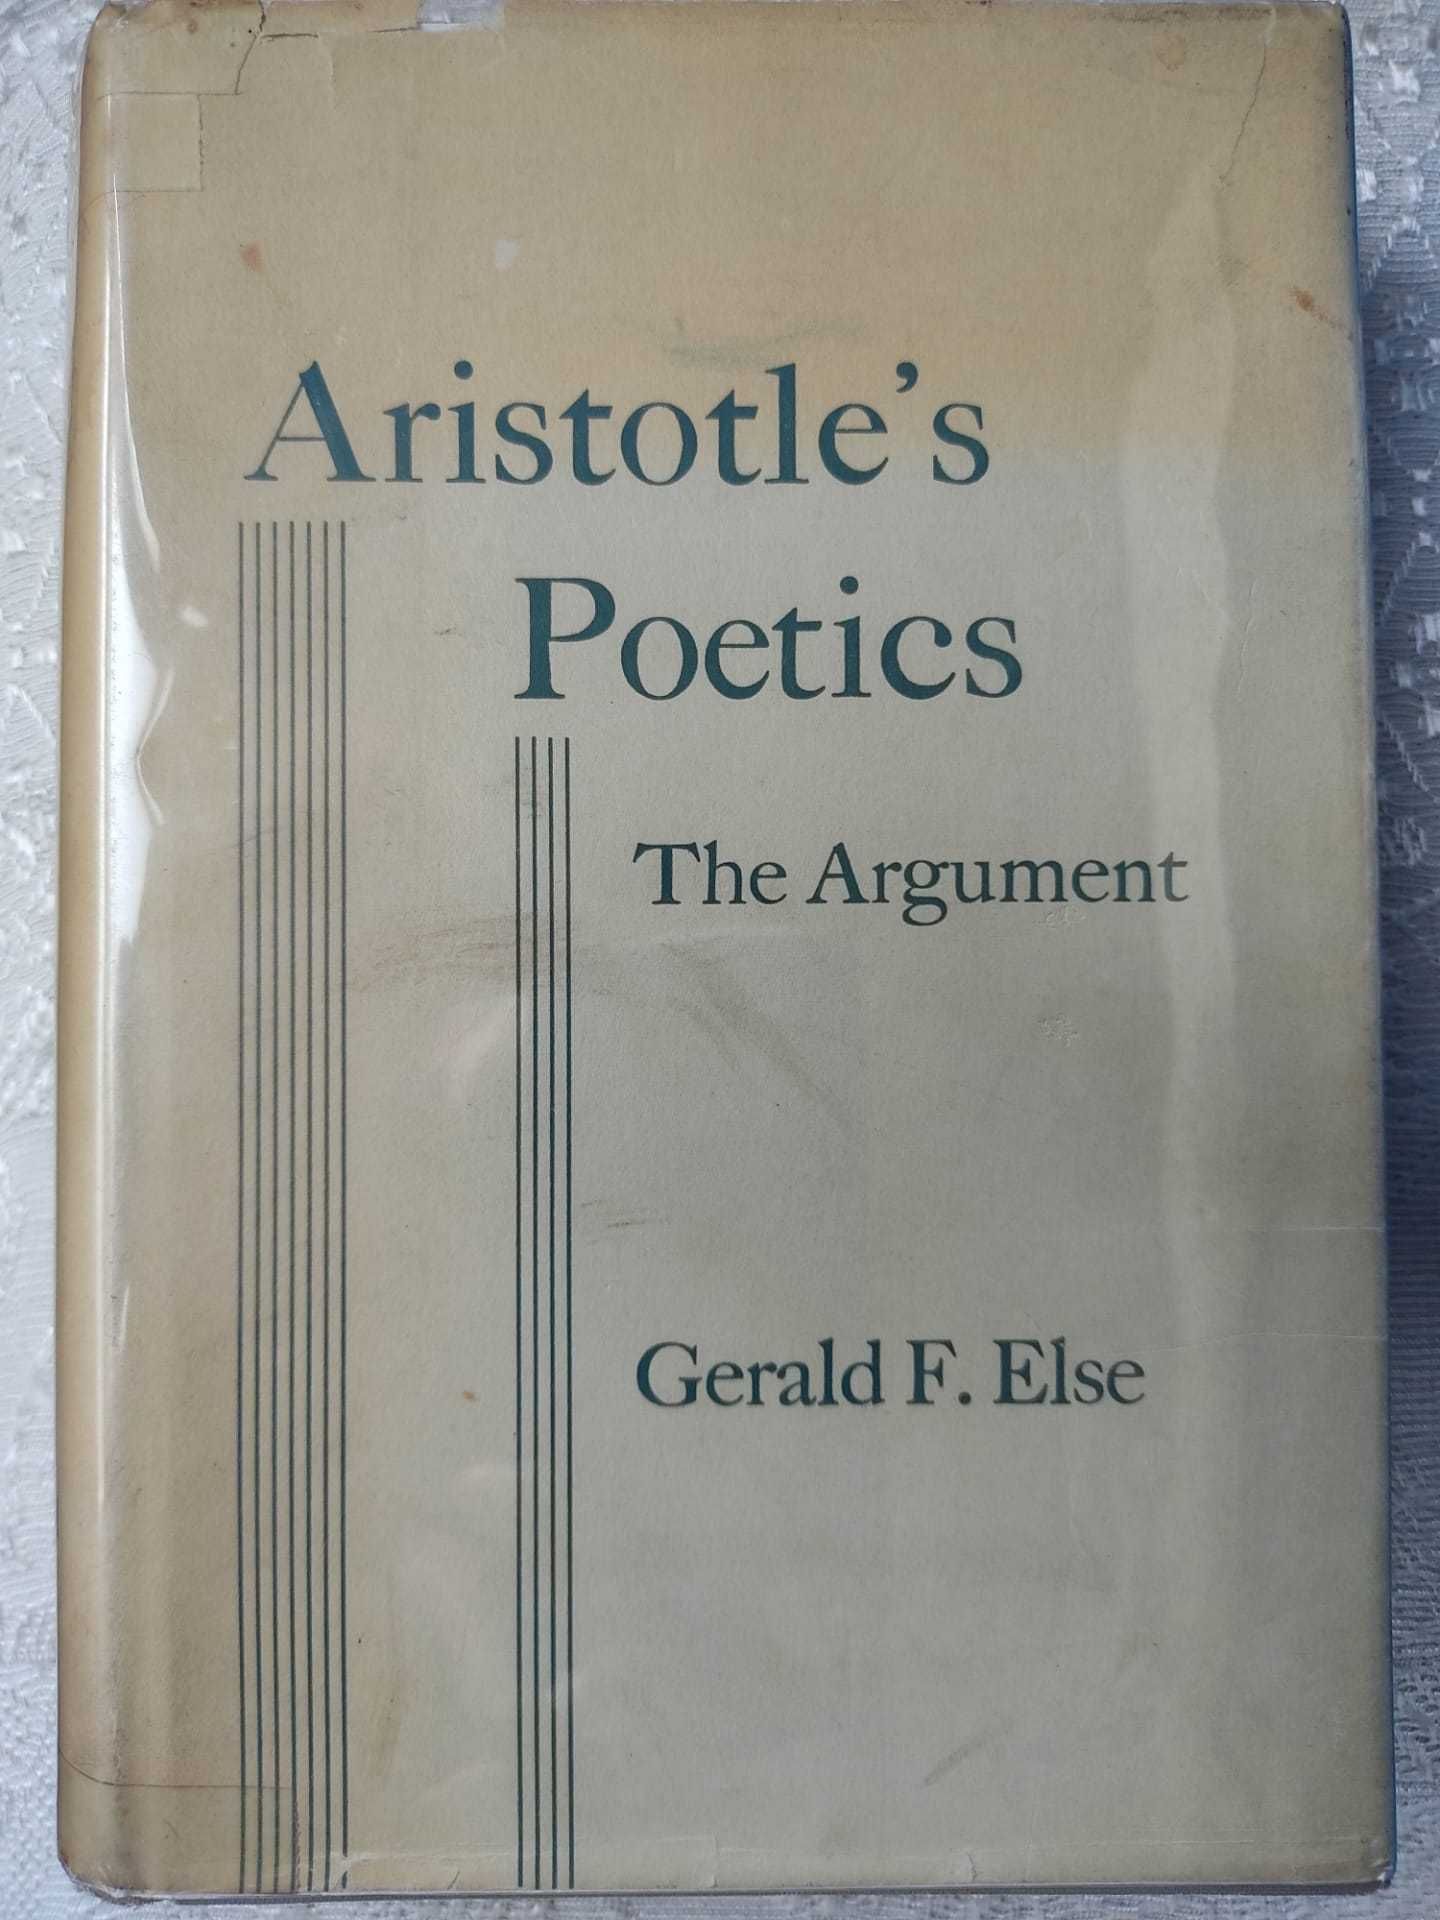 Aristotle's Poetics - The Argument